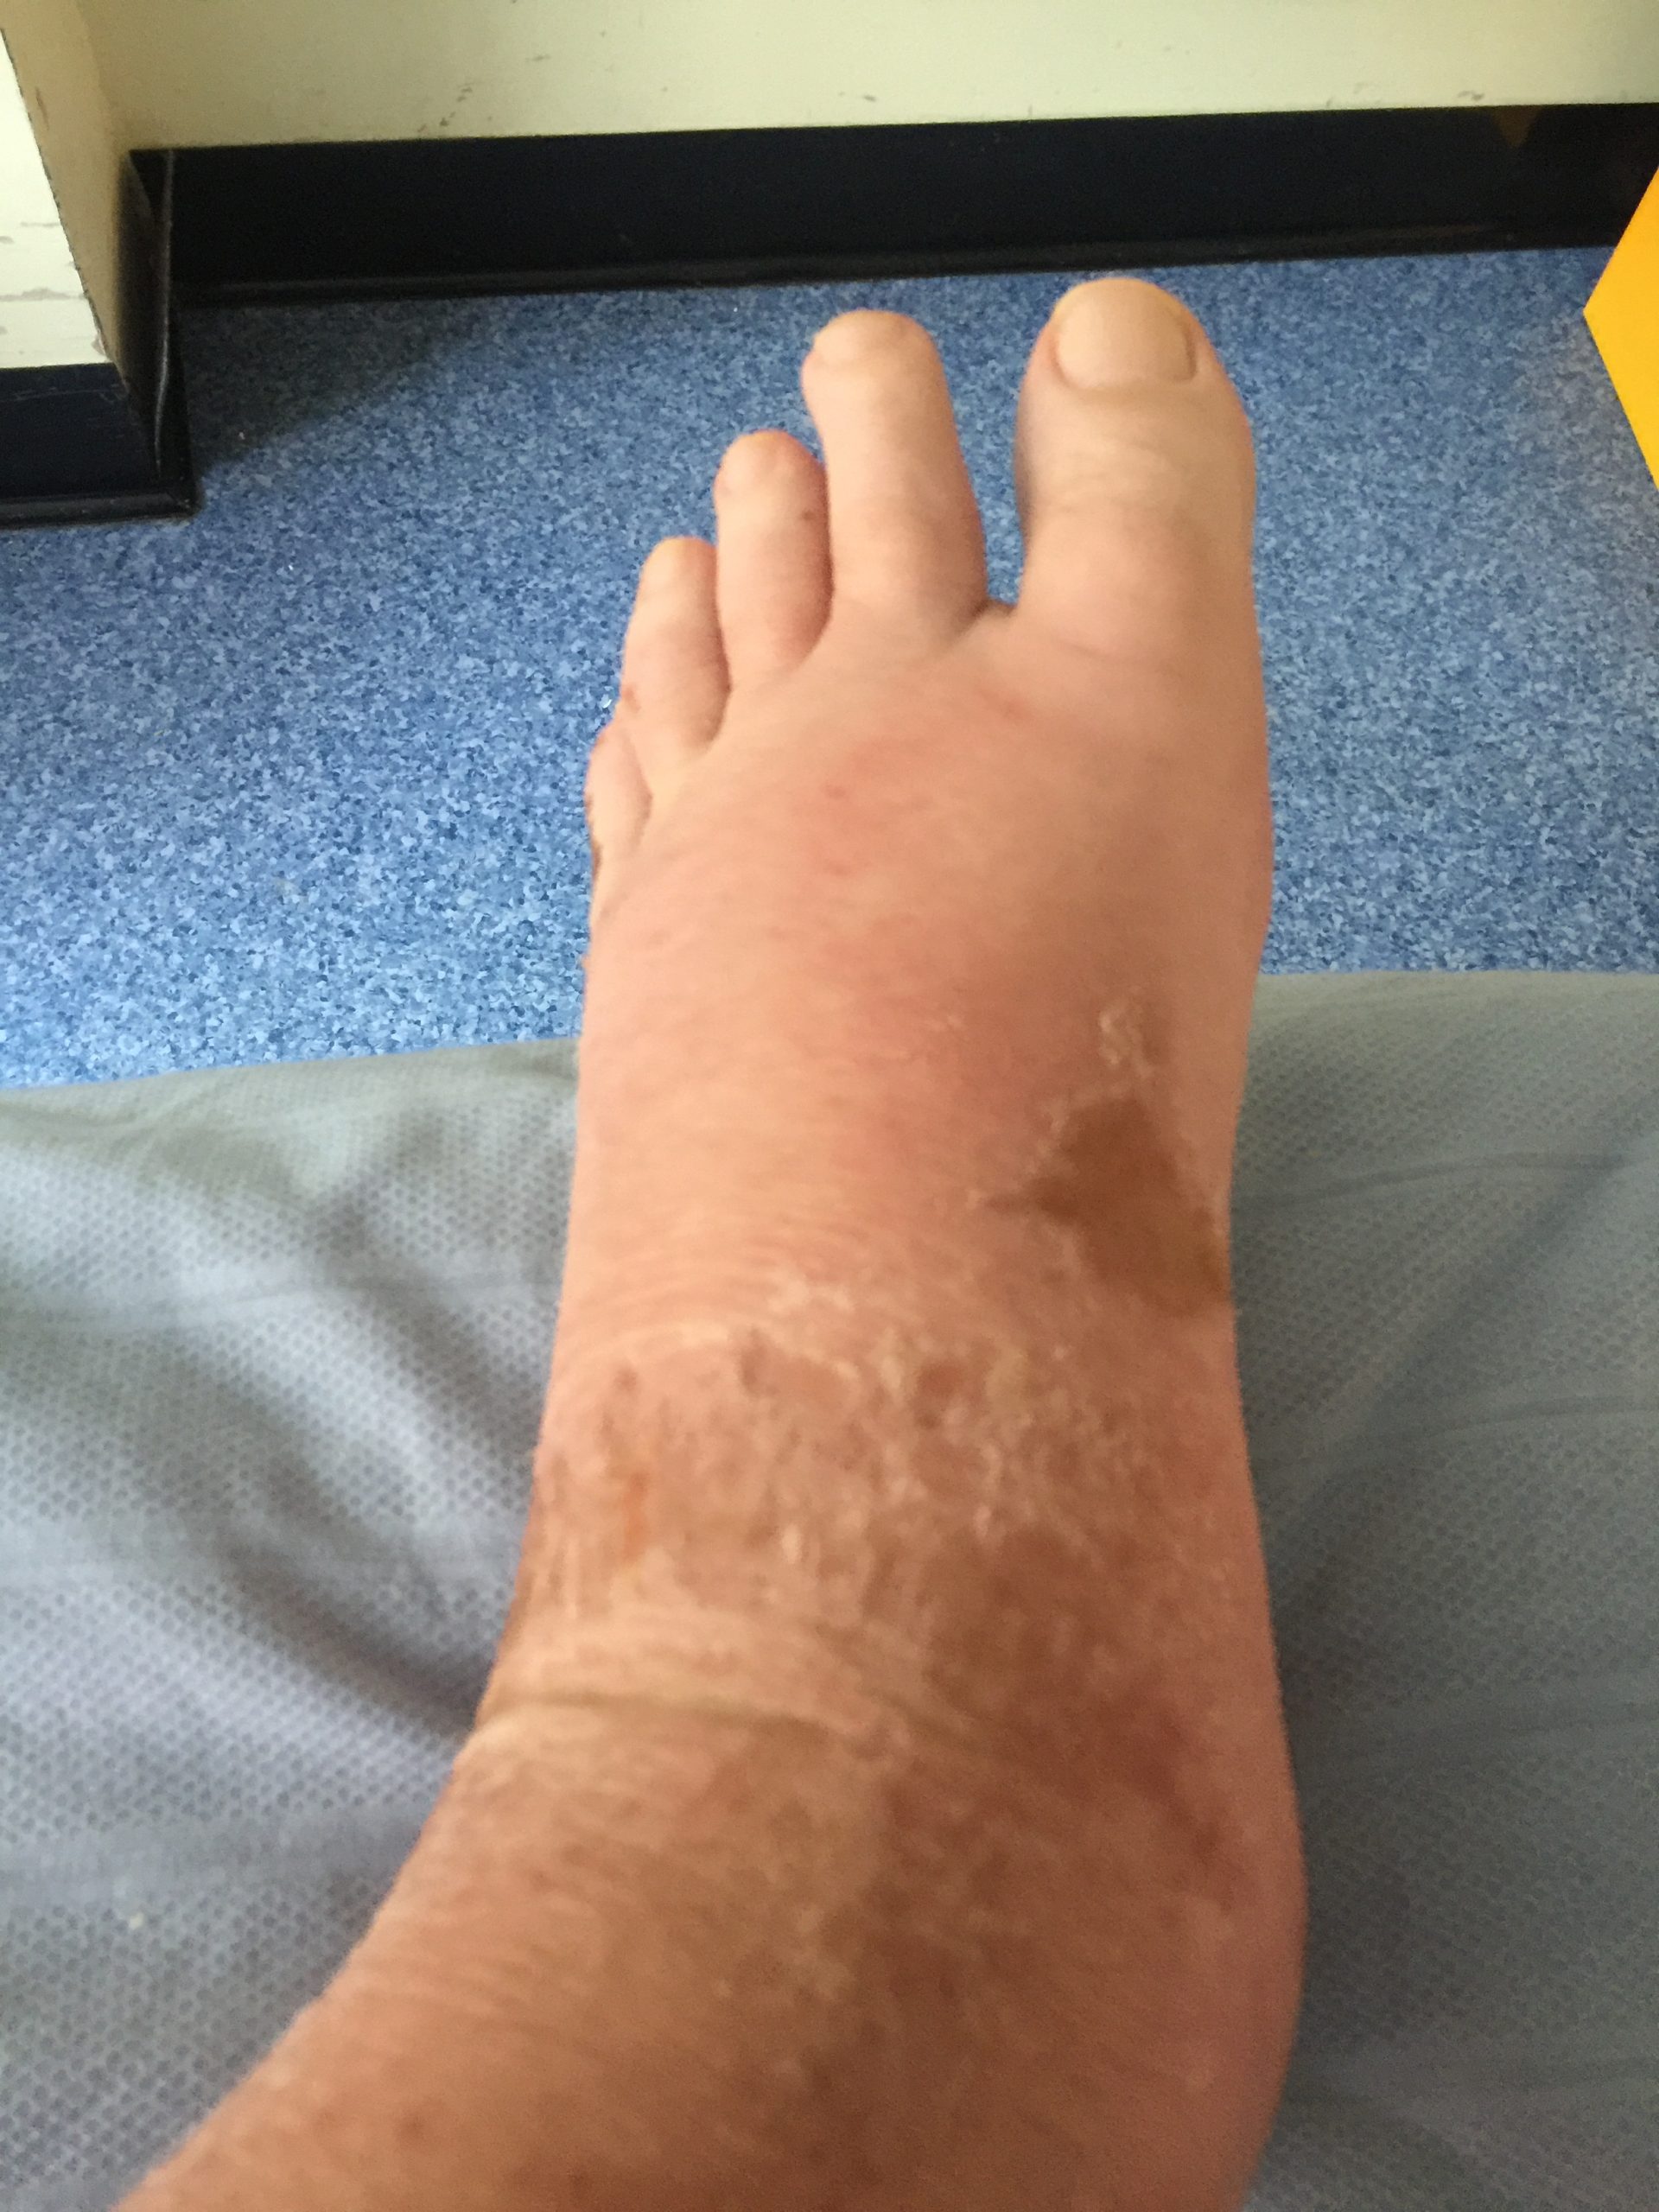 Photo of swollen foot